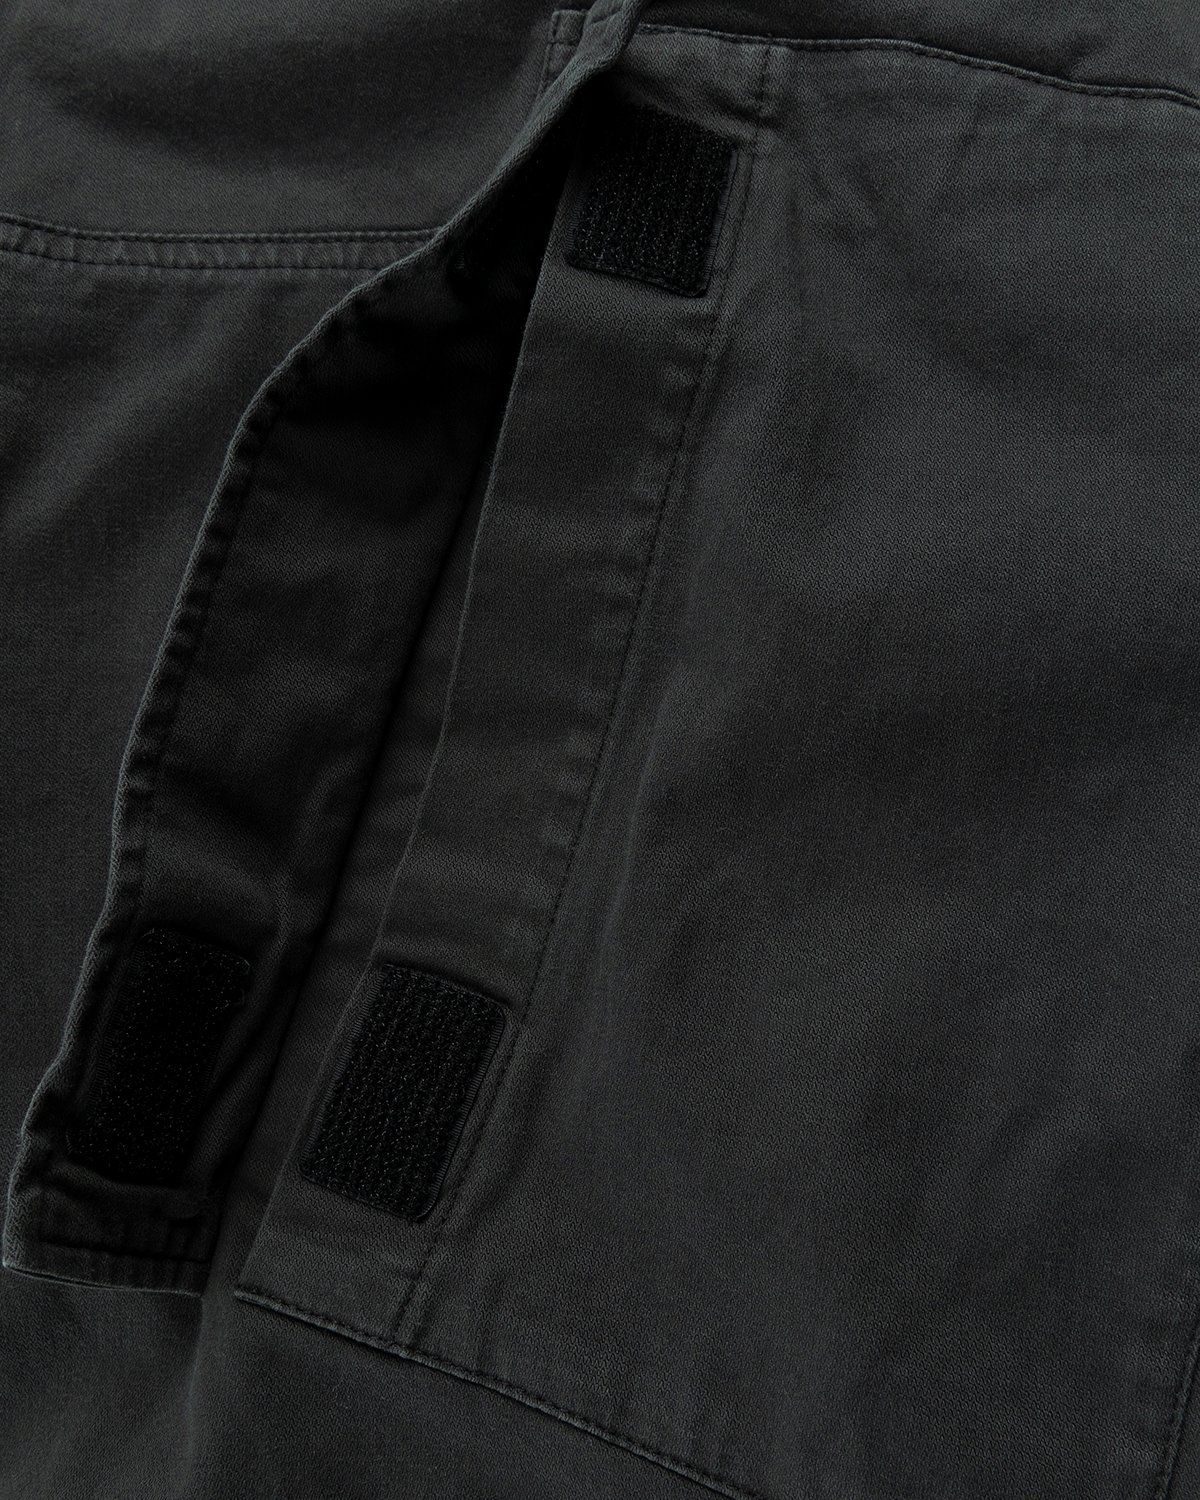 Acne Studios – Chevron Cargo Pants Anthracite Grey - Image 5